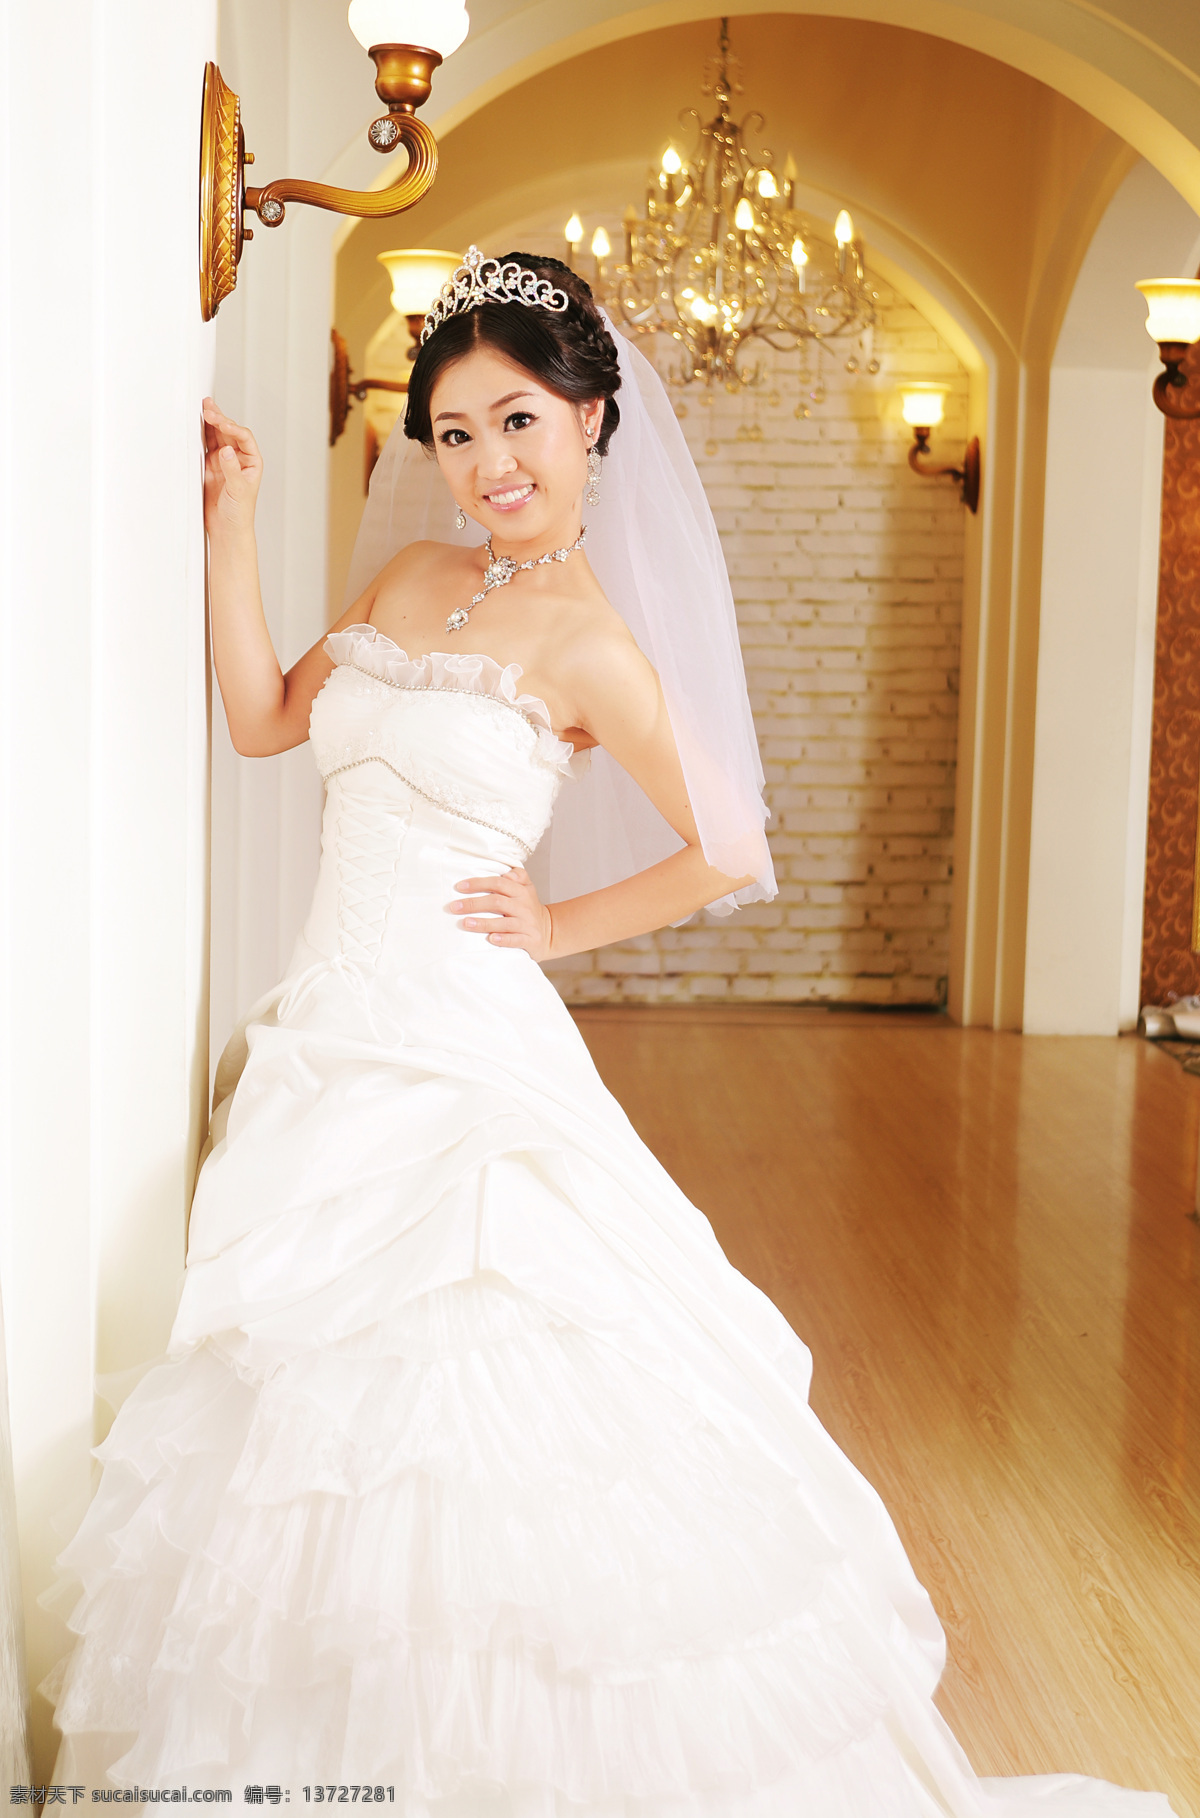 美丽新娘 白色婚纱 水晶灯 礼堂 微笑 幸福新娘 人物摄影 人物图库